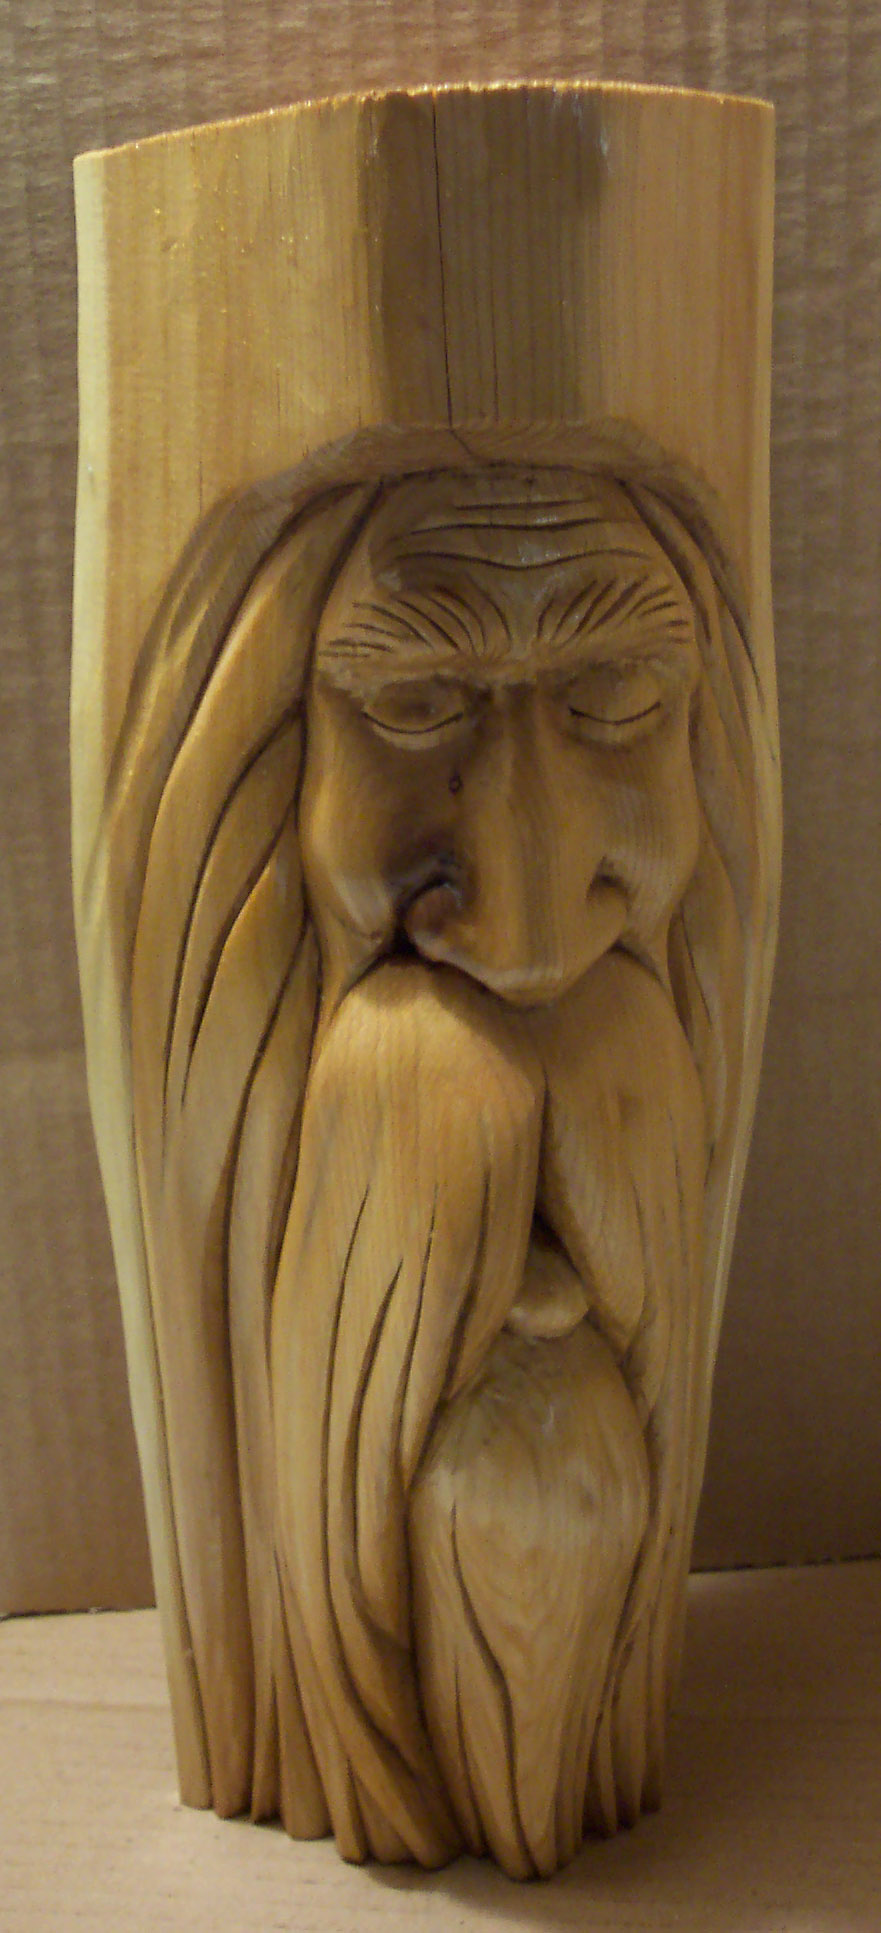 DIY Carving Wood Spirits Wooden PDF reloading desk plans 